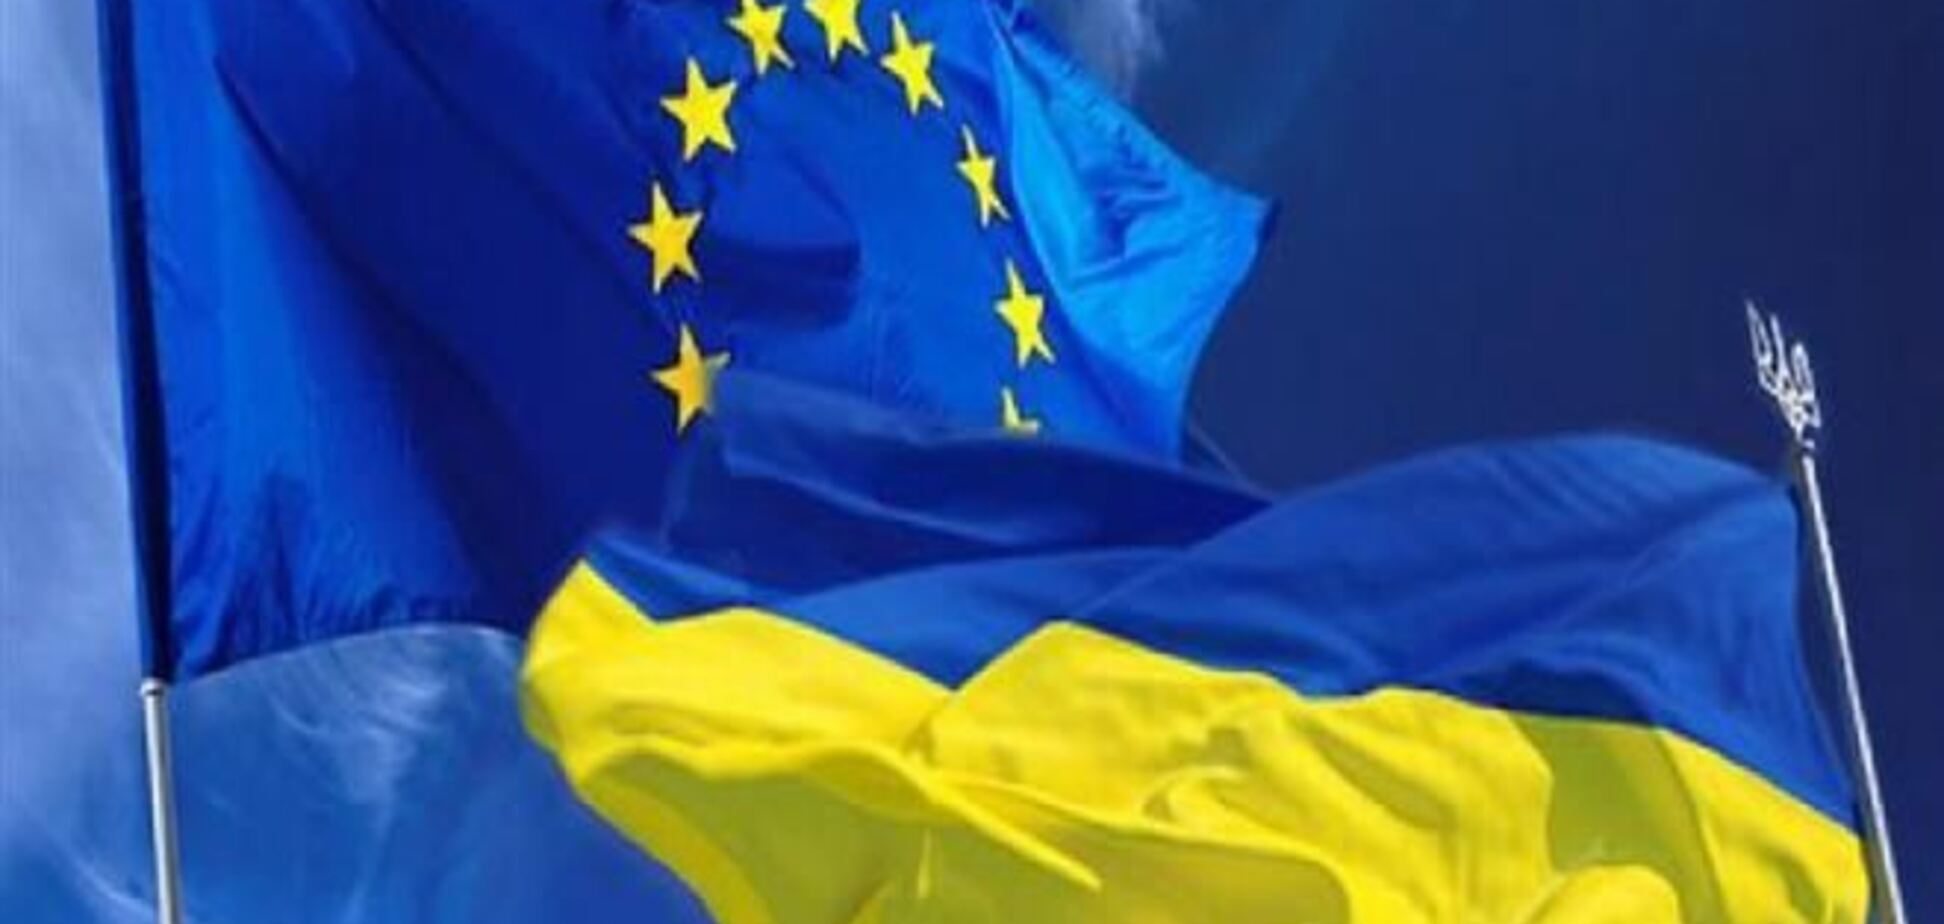 Європарламент вітає зміну влади в Україні демократичним шляхом